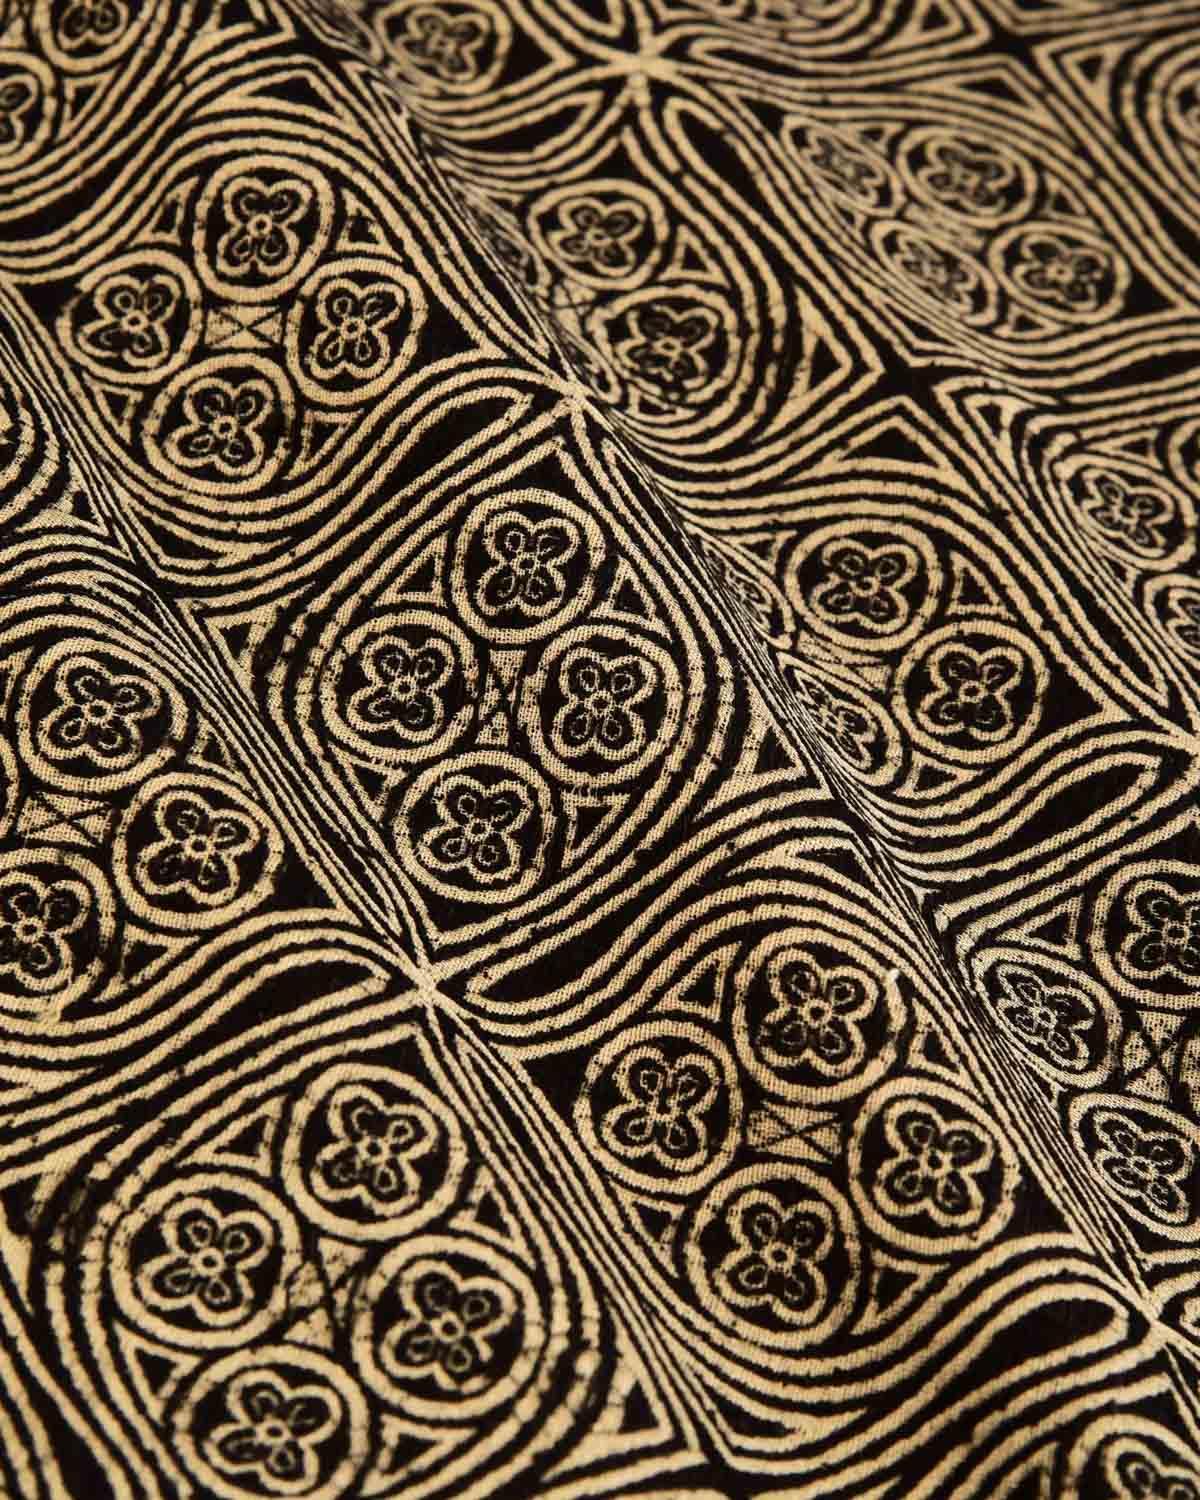 Beige-Black Banarasi Resham Tanchoi Woven Cotton Silk Pocket Square - By HolyWeaves, Benares